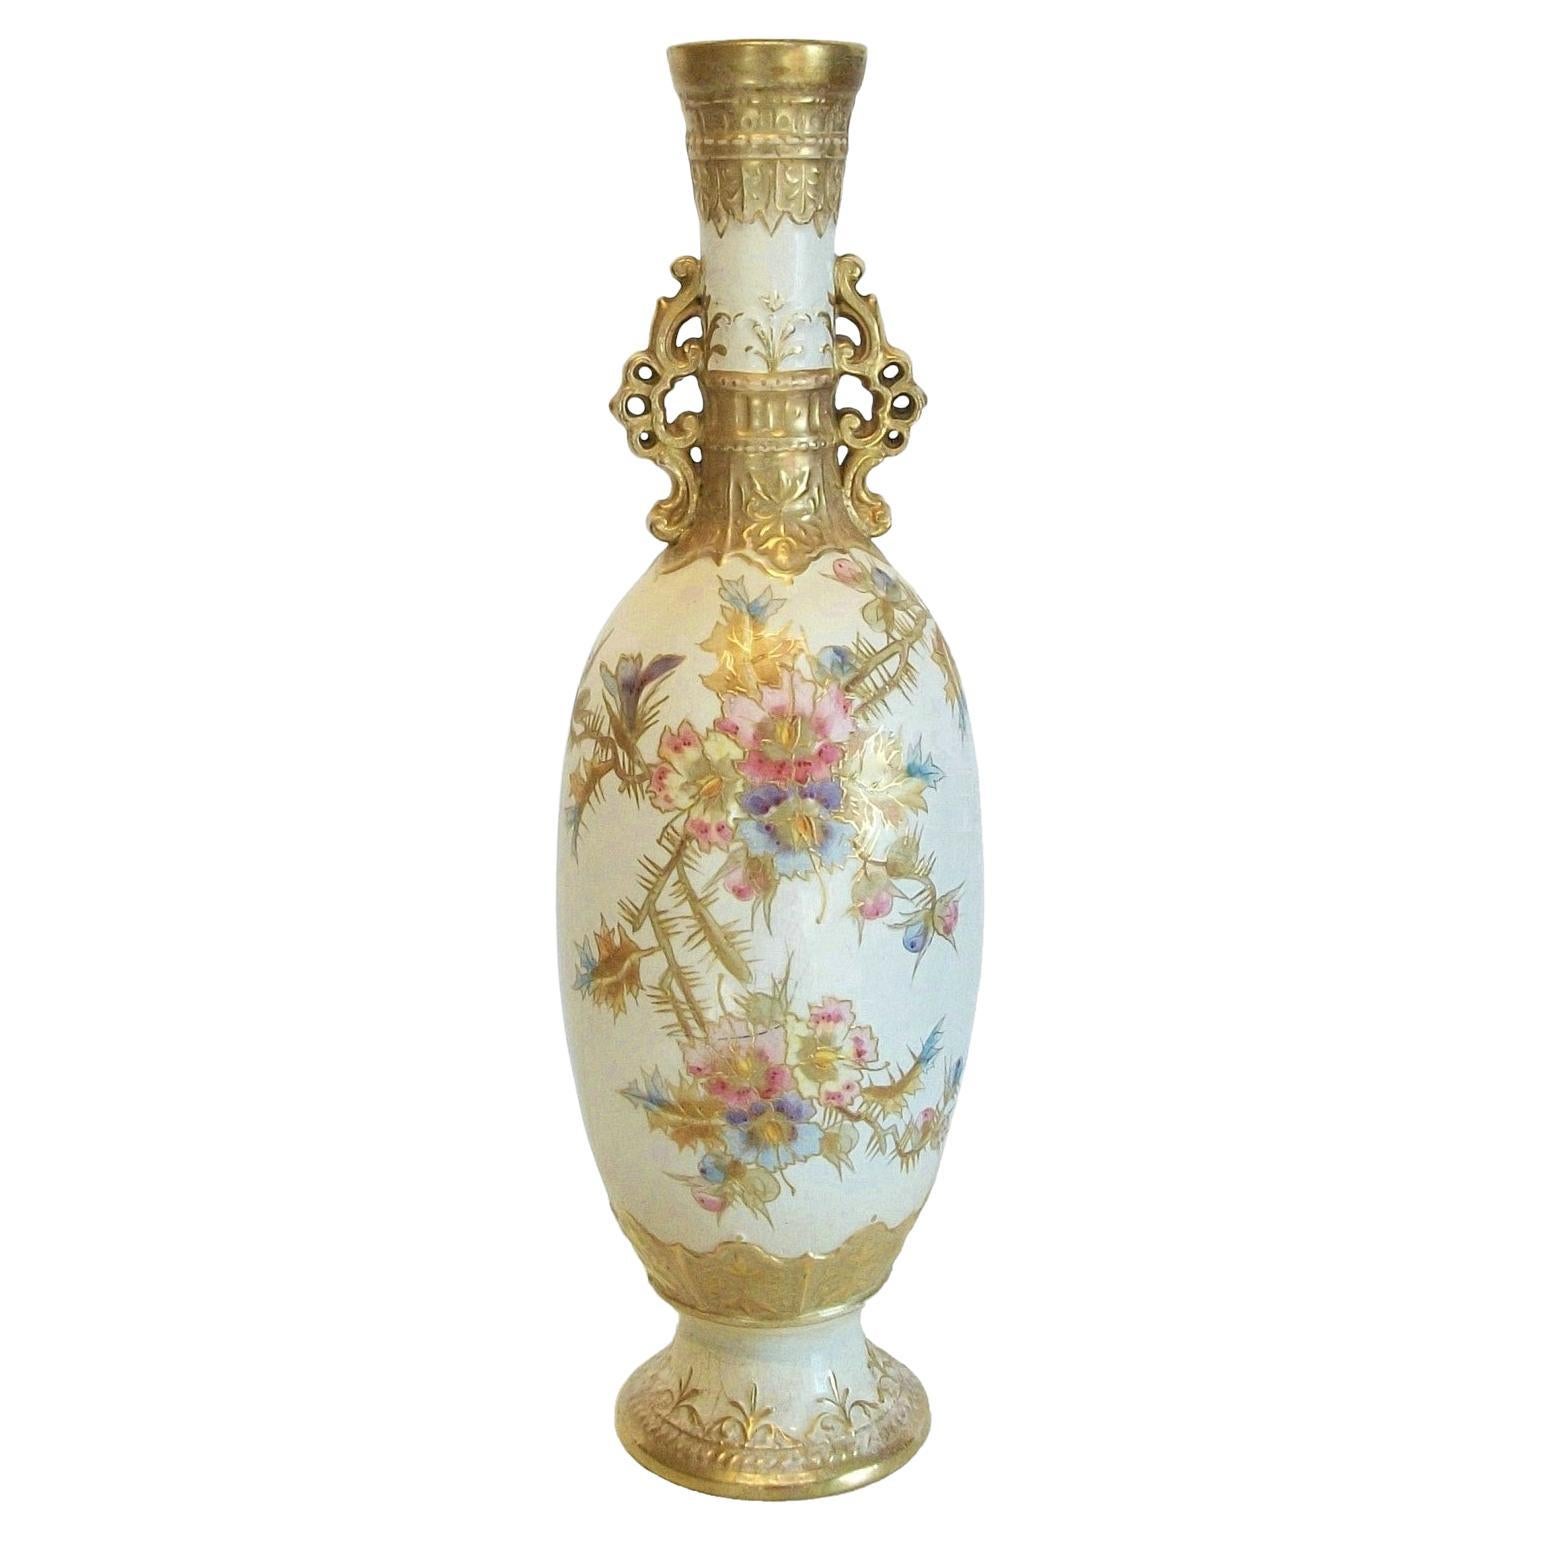 Vase / lampe ROYAL BONN - FRANZ ANTON MEHLEM - peint à la main et doré - vers 1900